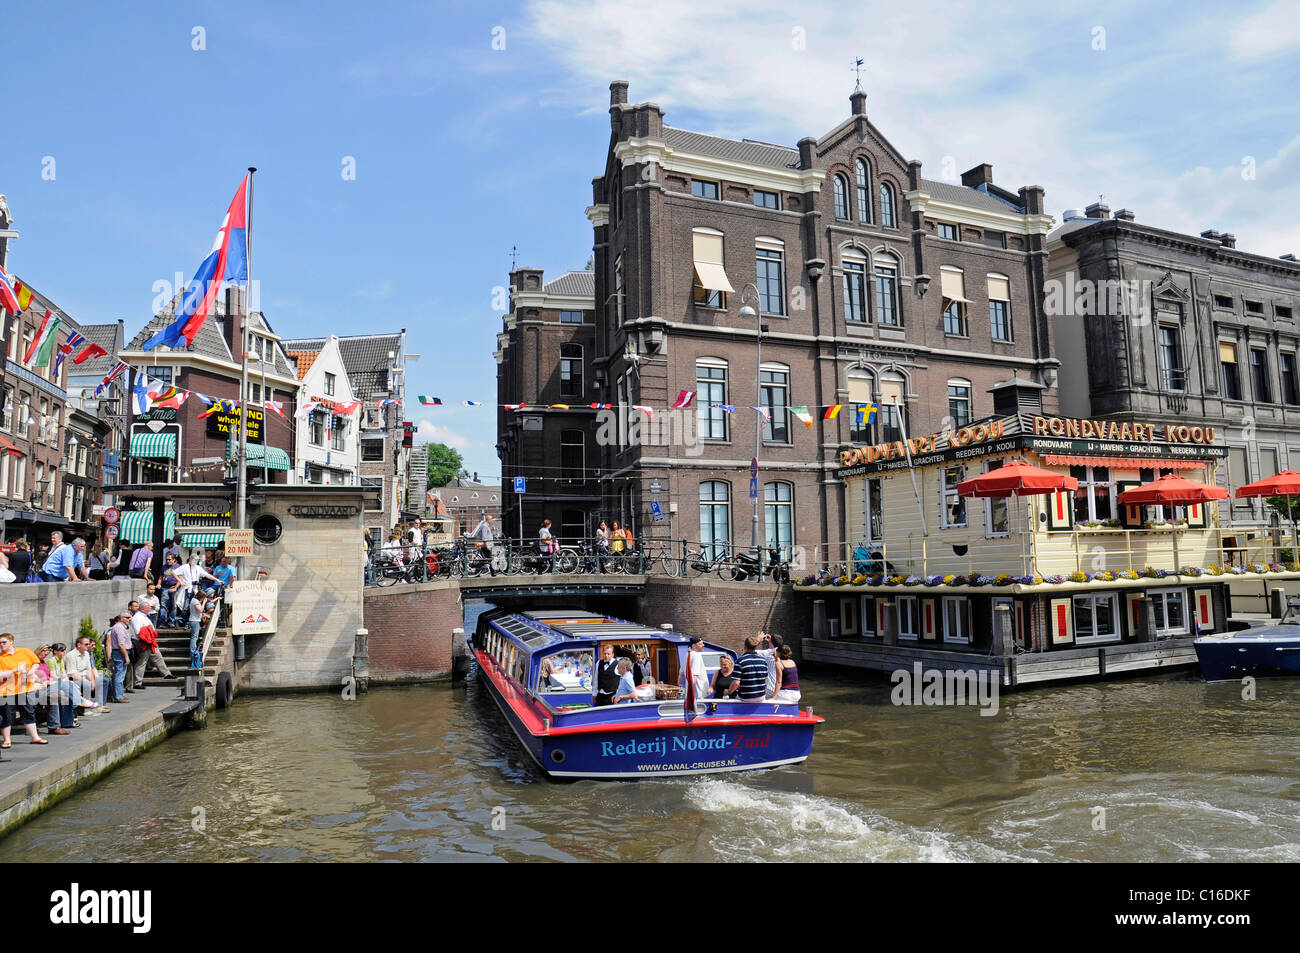 Station d'accueil, visite de la ville, canal, bateaux, Amsterdam, Hollande, Pays-Bas, Europe Banque D'Images